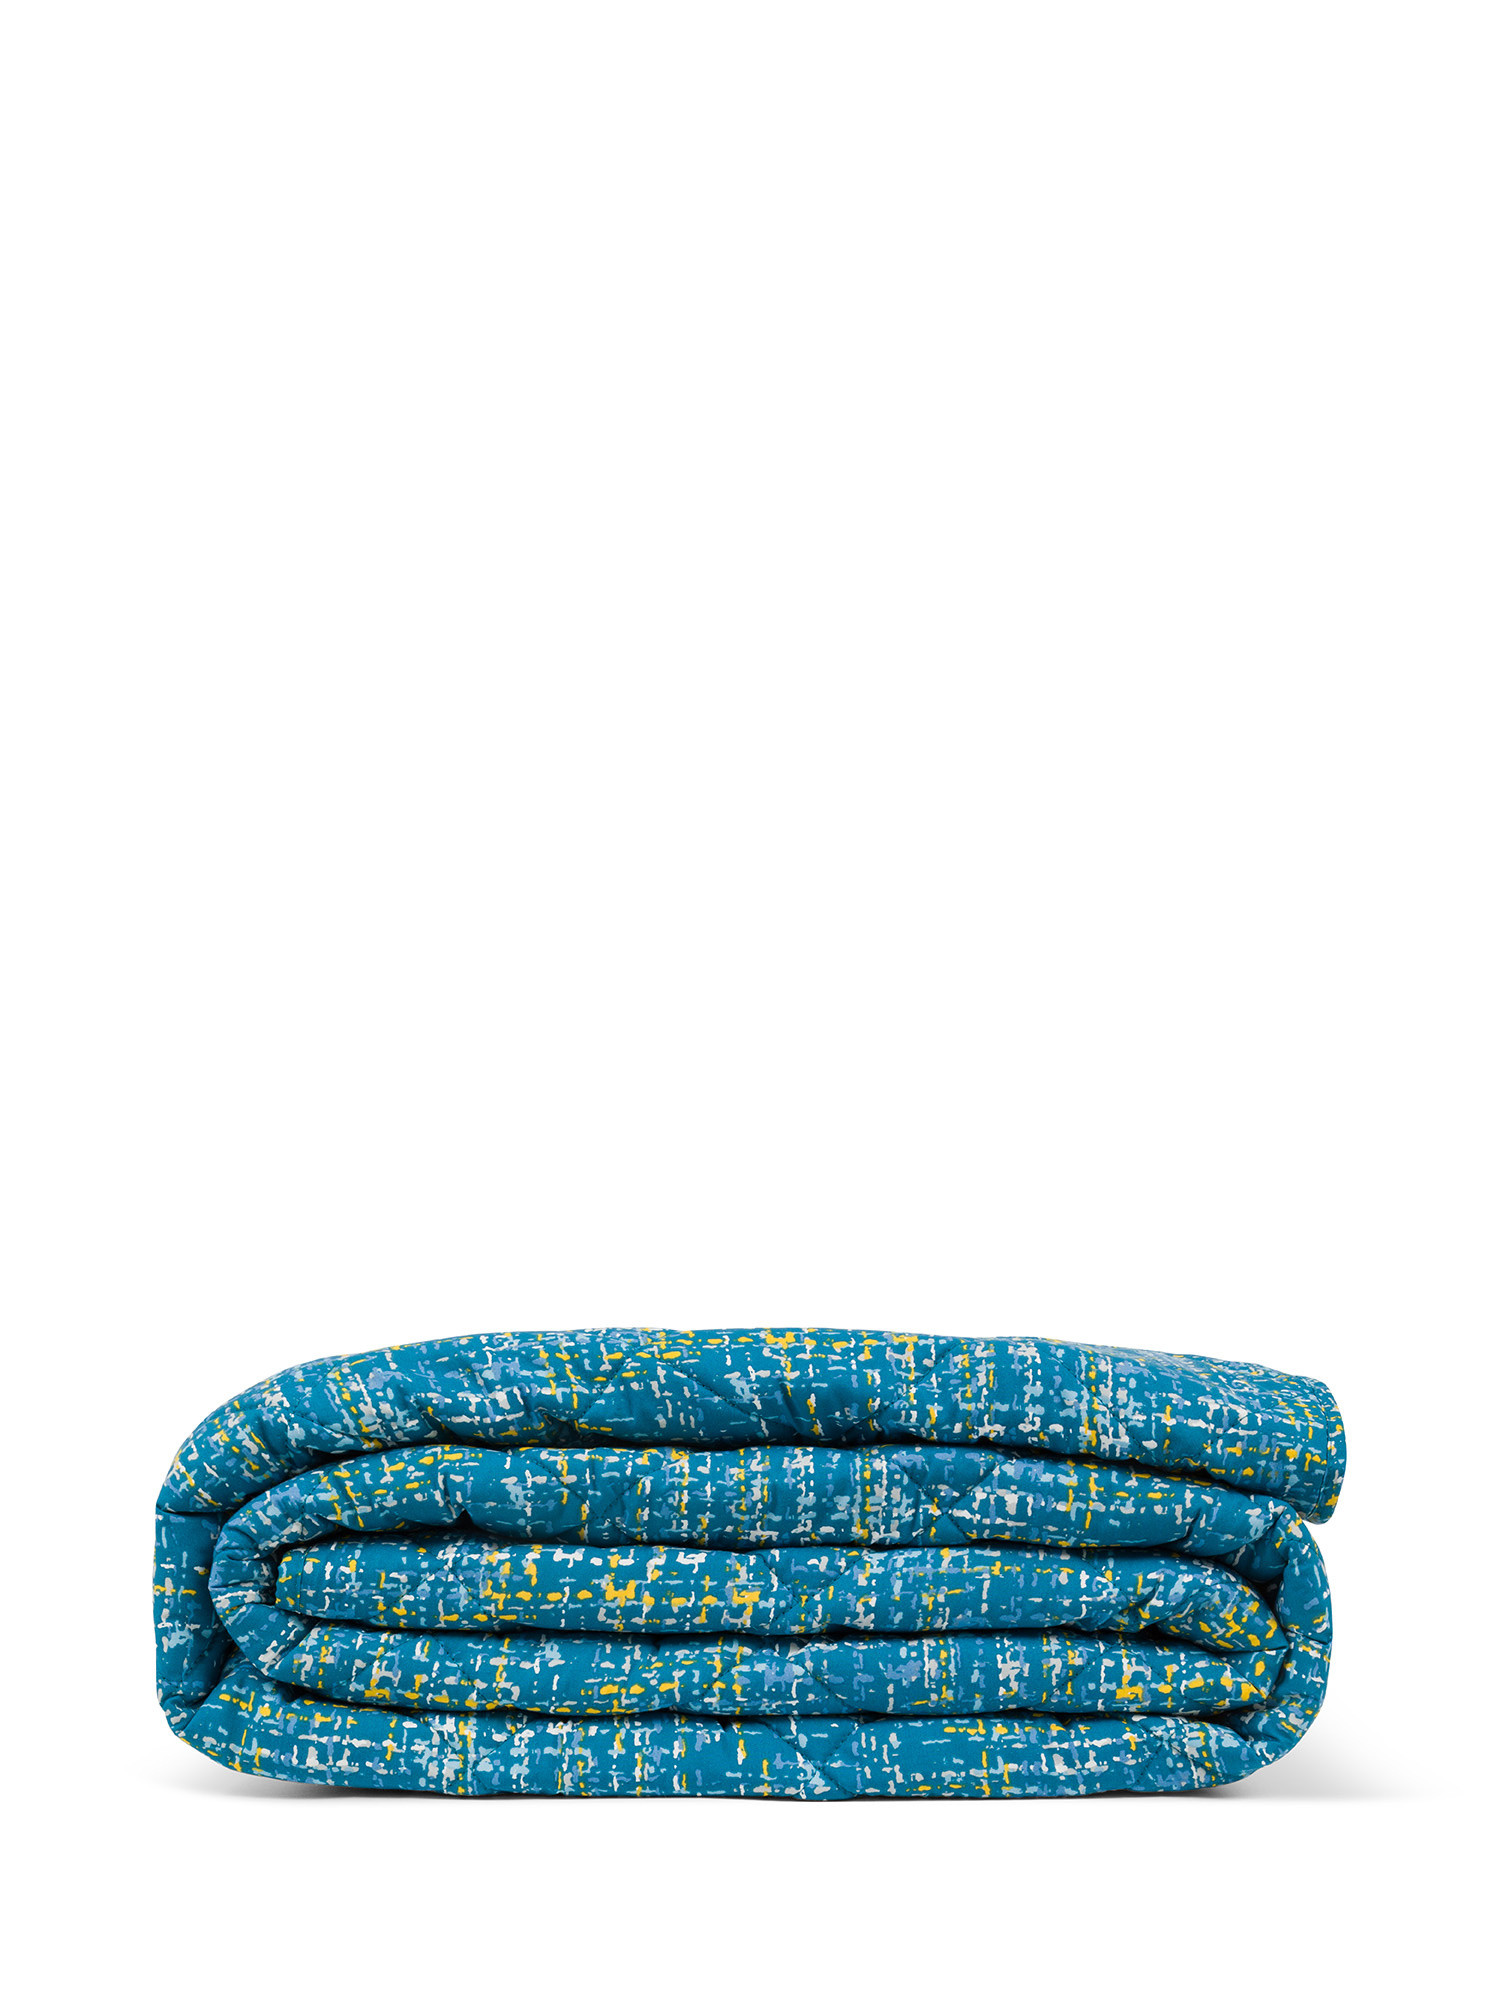 Хлопковое одеяло с абстрактным рисунком Coincasa, синий шотландская сетка 160x130 см красная клетка 2 л слои кораллового флиса детское толстое одеяло покрывало для кровати диванное одеяло